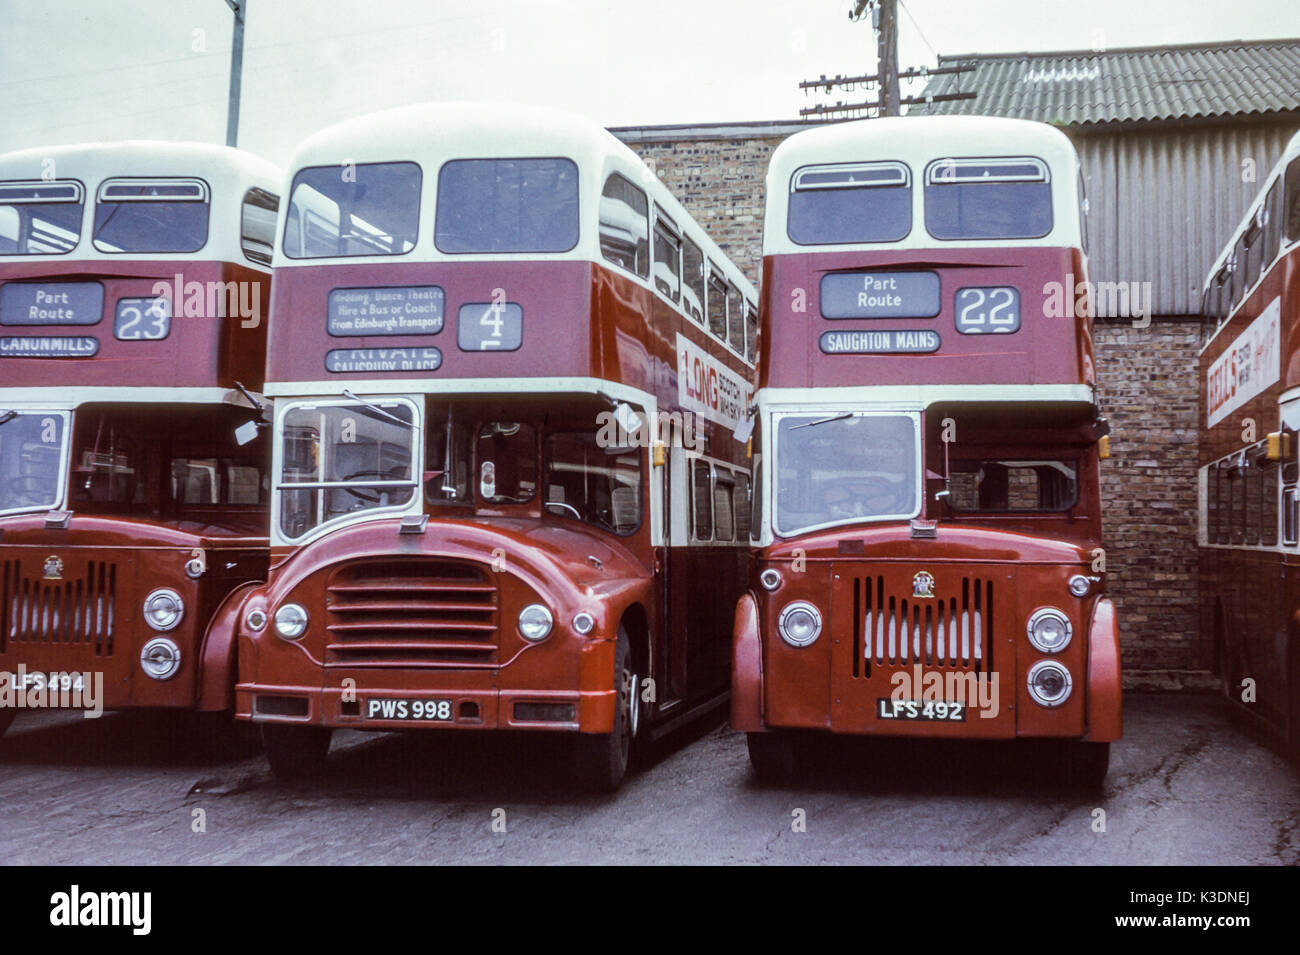 Schottland, Großbritannien - 1973: Vintage Bild der Busse im Jahr 1973. Edinburgh Leyland PD 2/20 Flotte Nr. 494 (Registrierung LFS 492 und LFS 494)) und Leyland PD 3/2 Flotte 998 (regisration PWS 998). Stockfoto